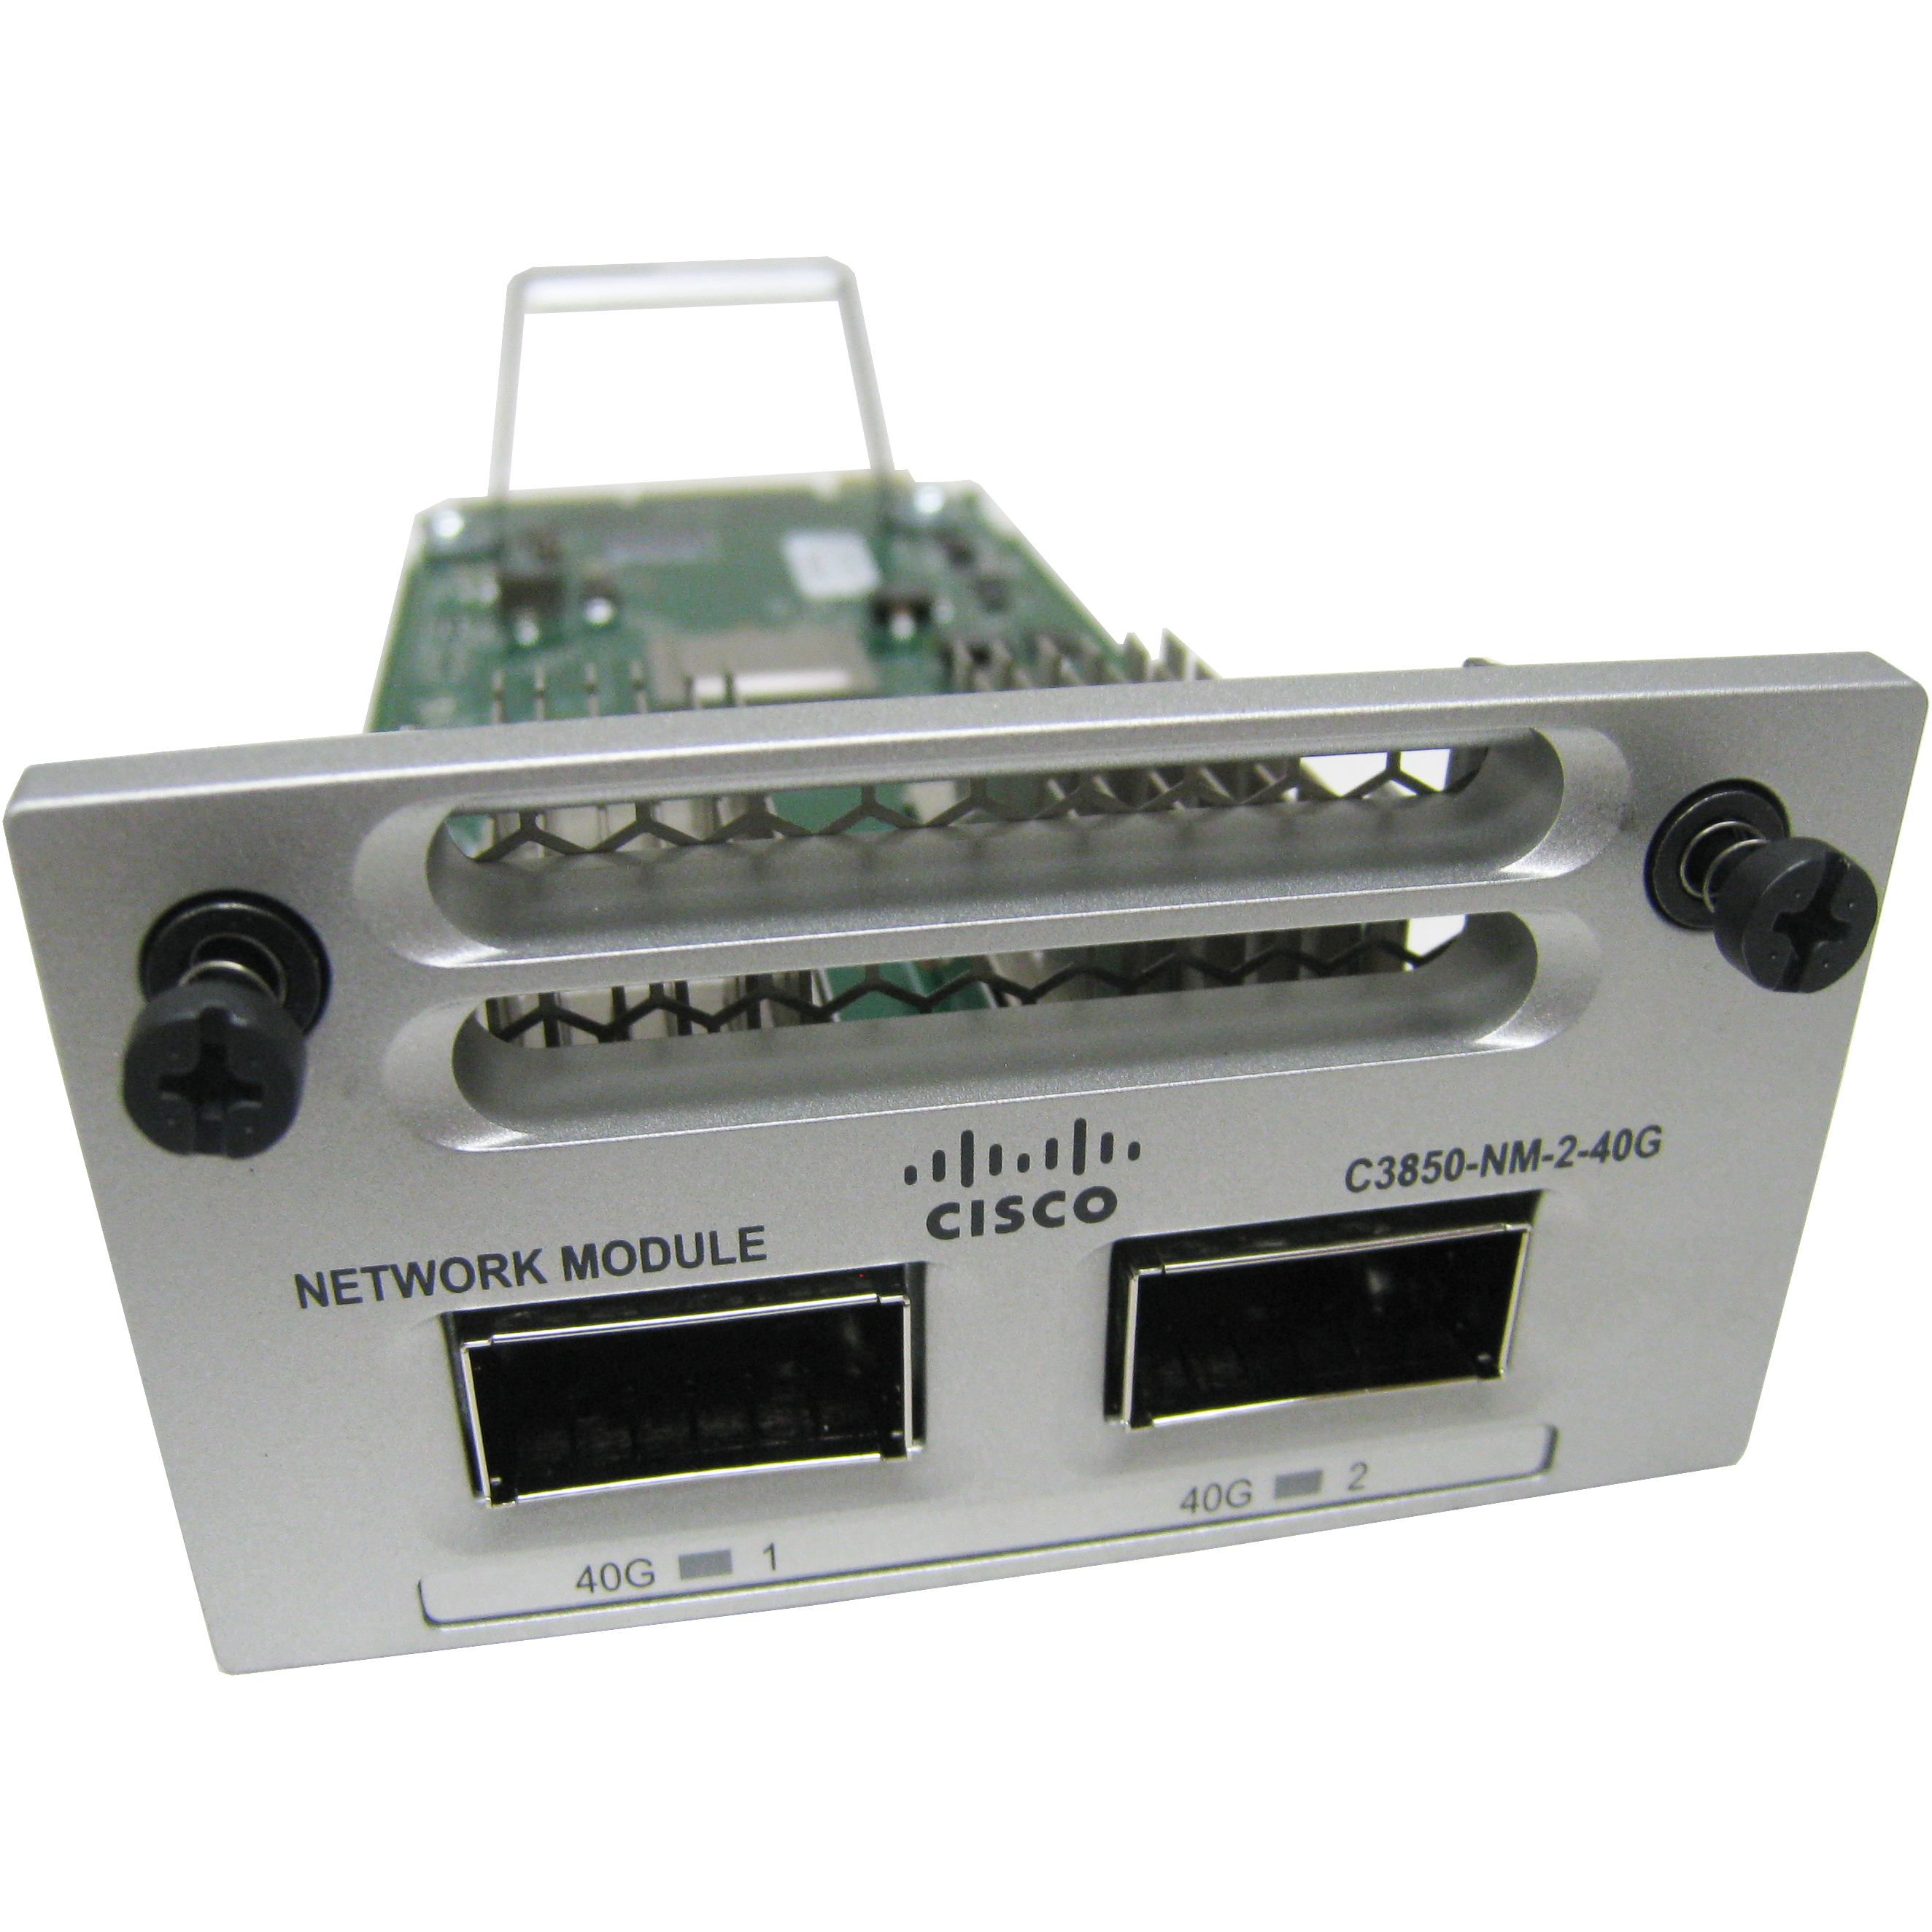 Cisco C3850-NM-2-40G